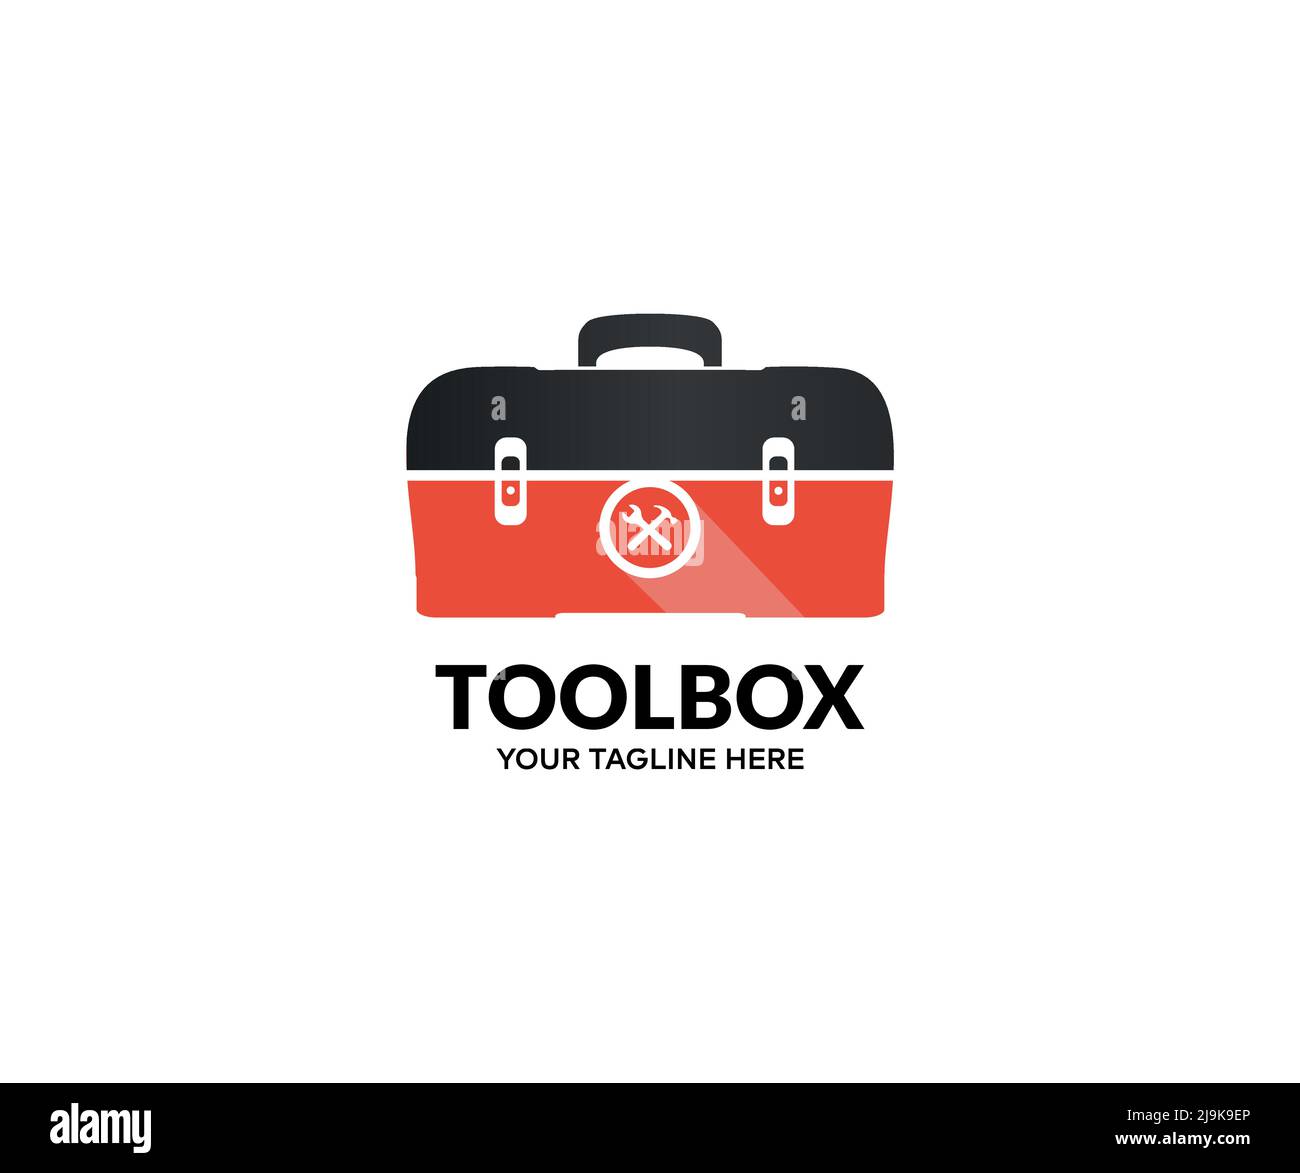 Roter Werkzeugkasten voller Handwerkzeuge, modernes Werkzeugkasten-Logo-Design. Handyman Service Toolbox oder Tool Box Vektor-Design und Illustration. Stock Vektor